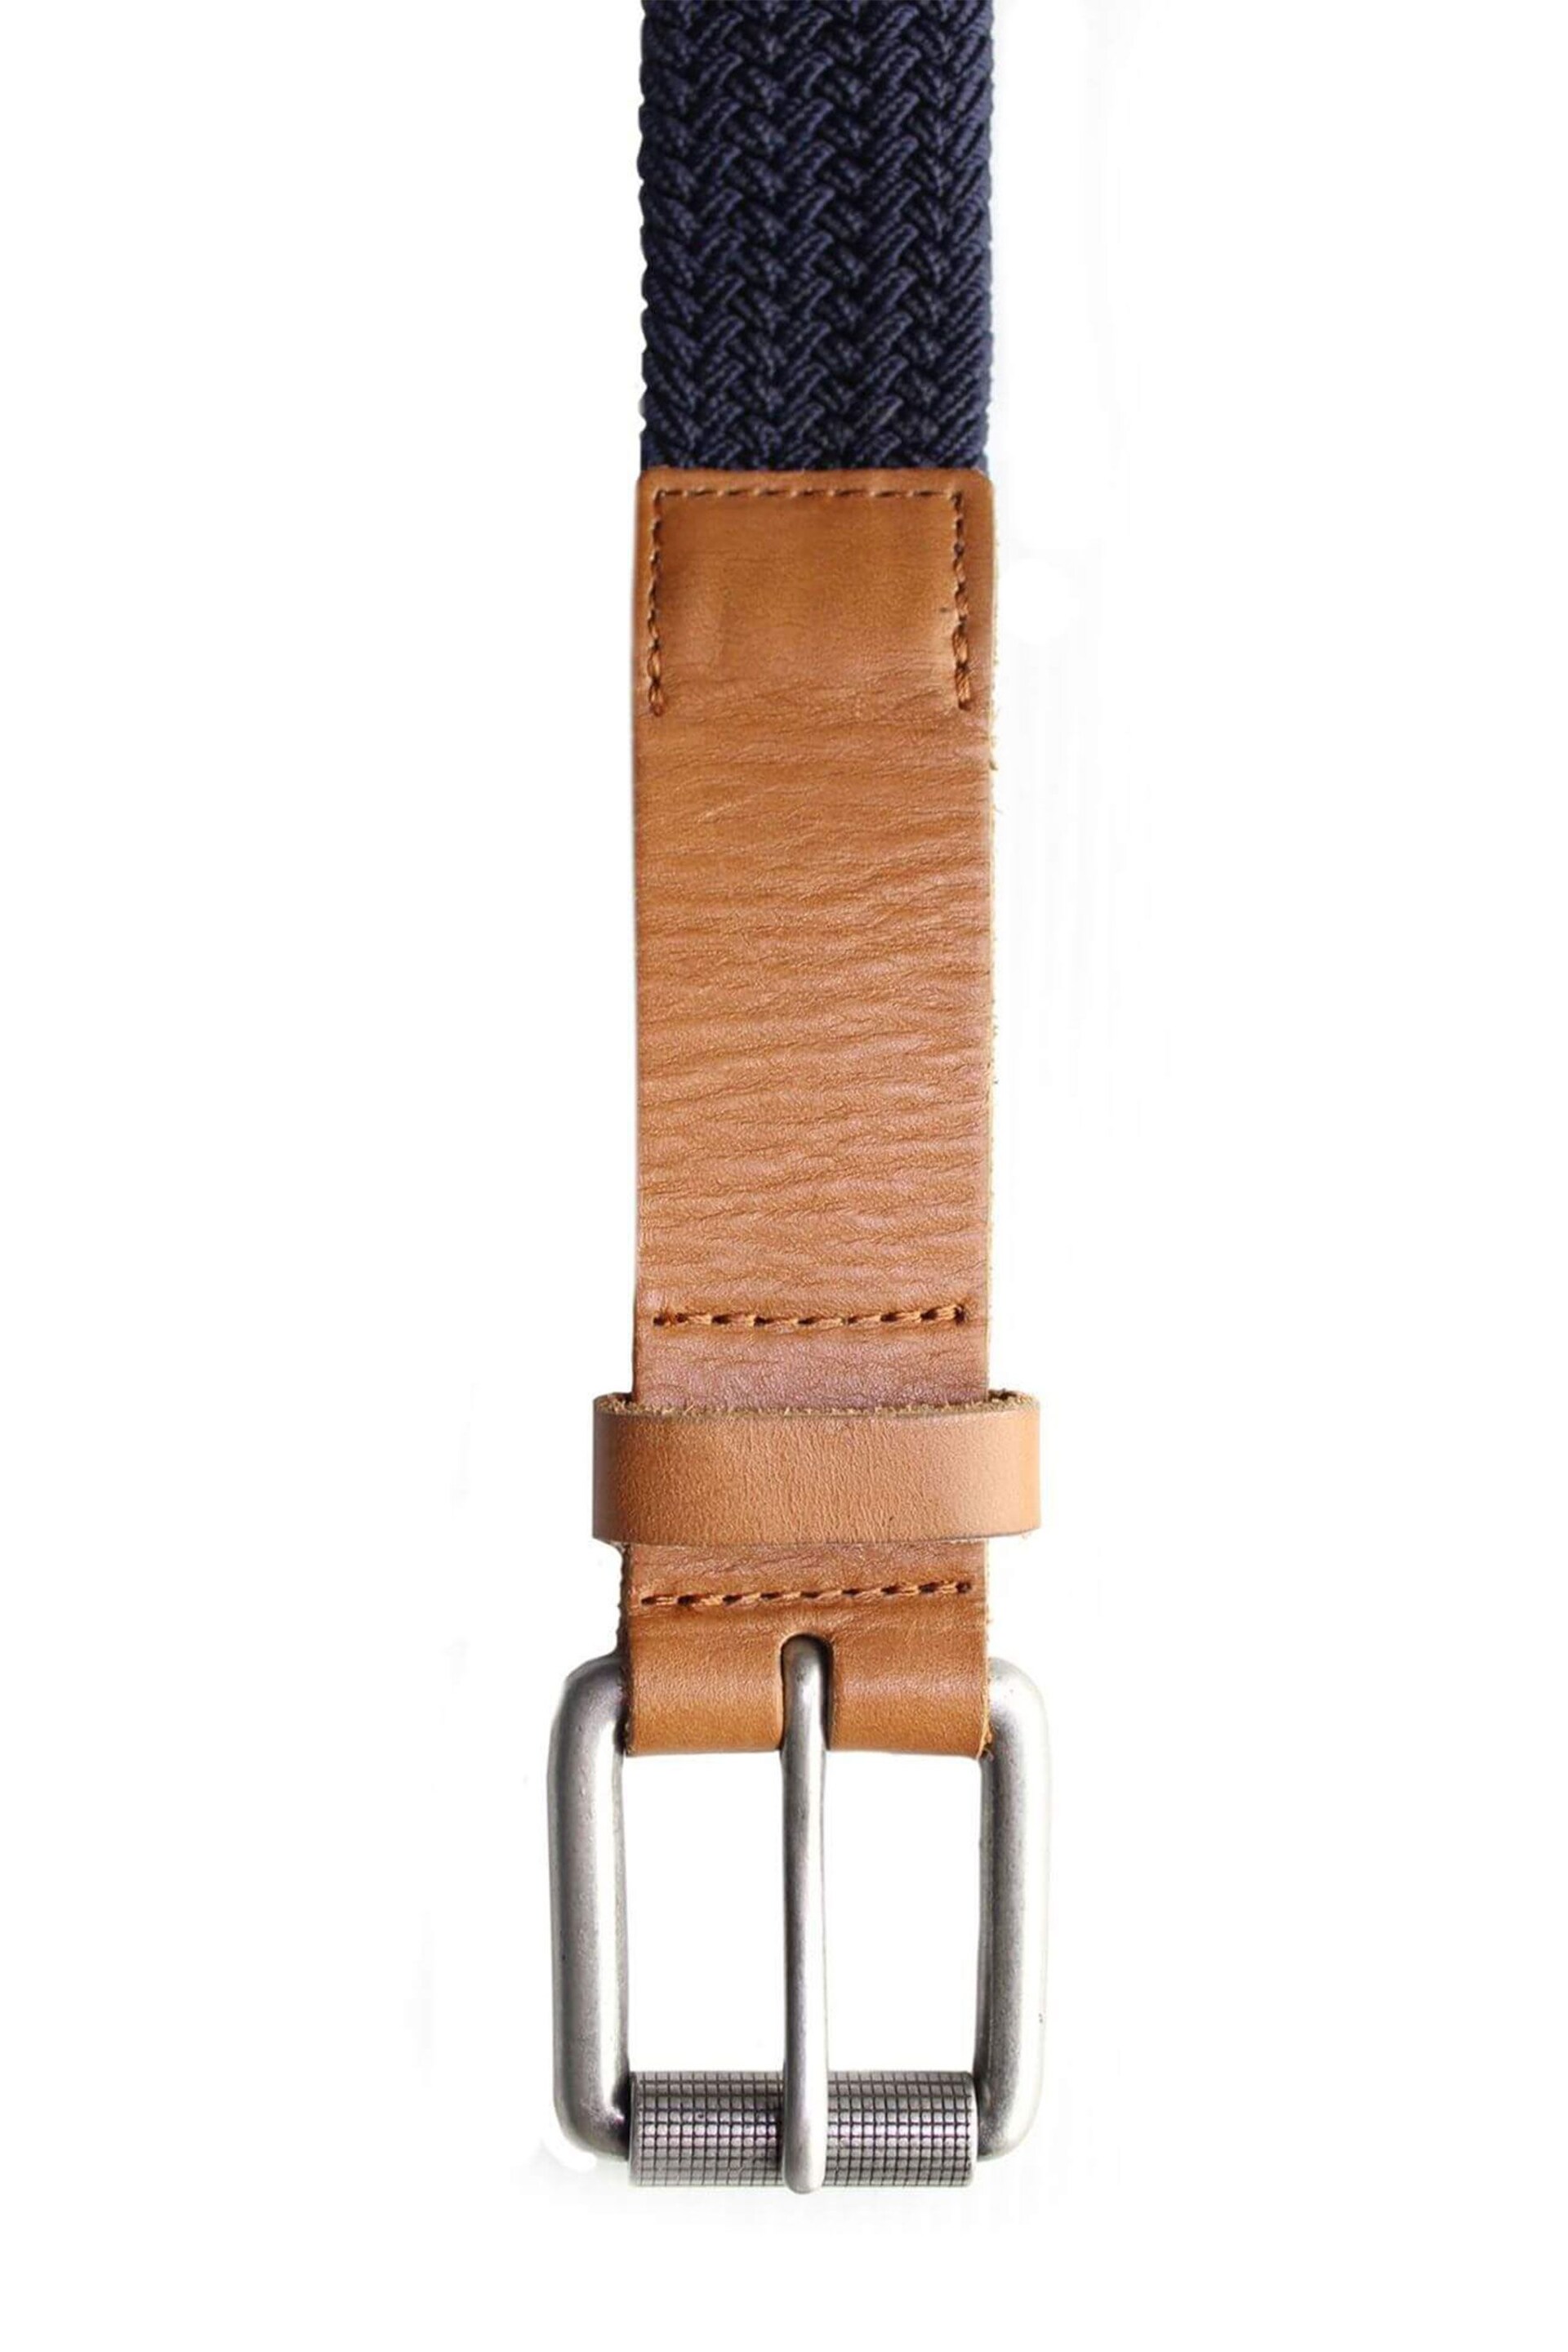 Raging Bull Blue Braided Belt - Image 4 of 5